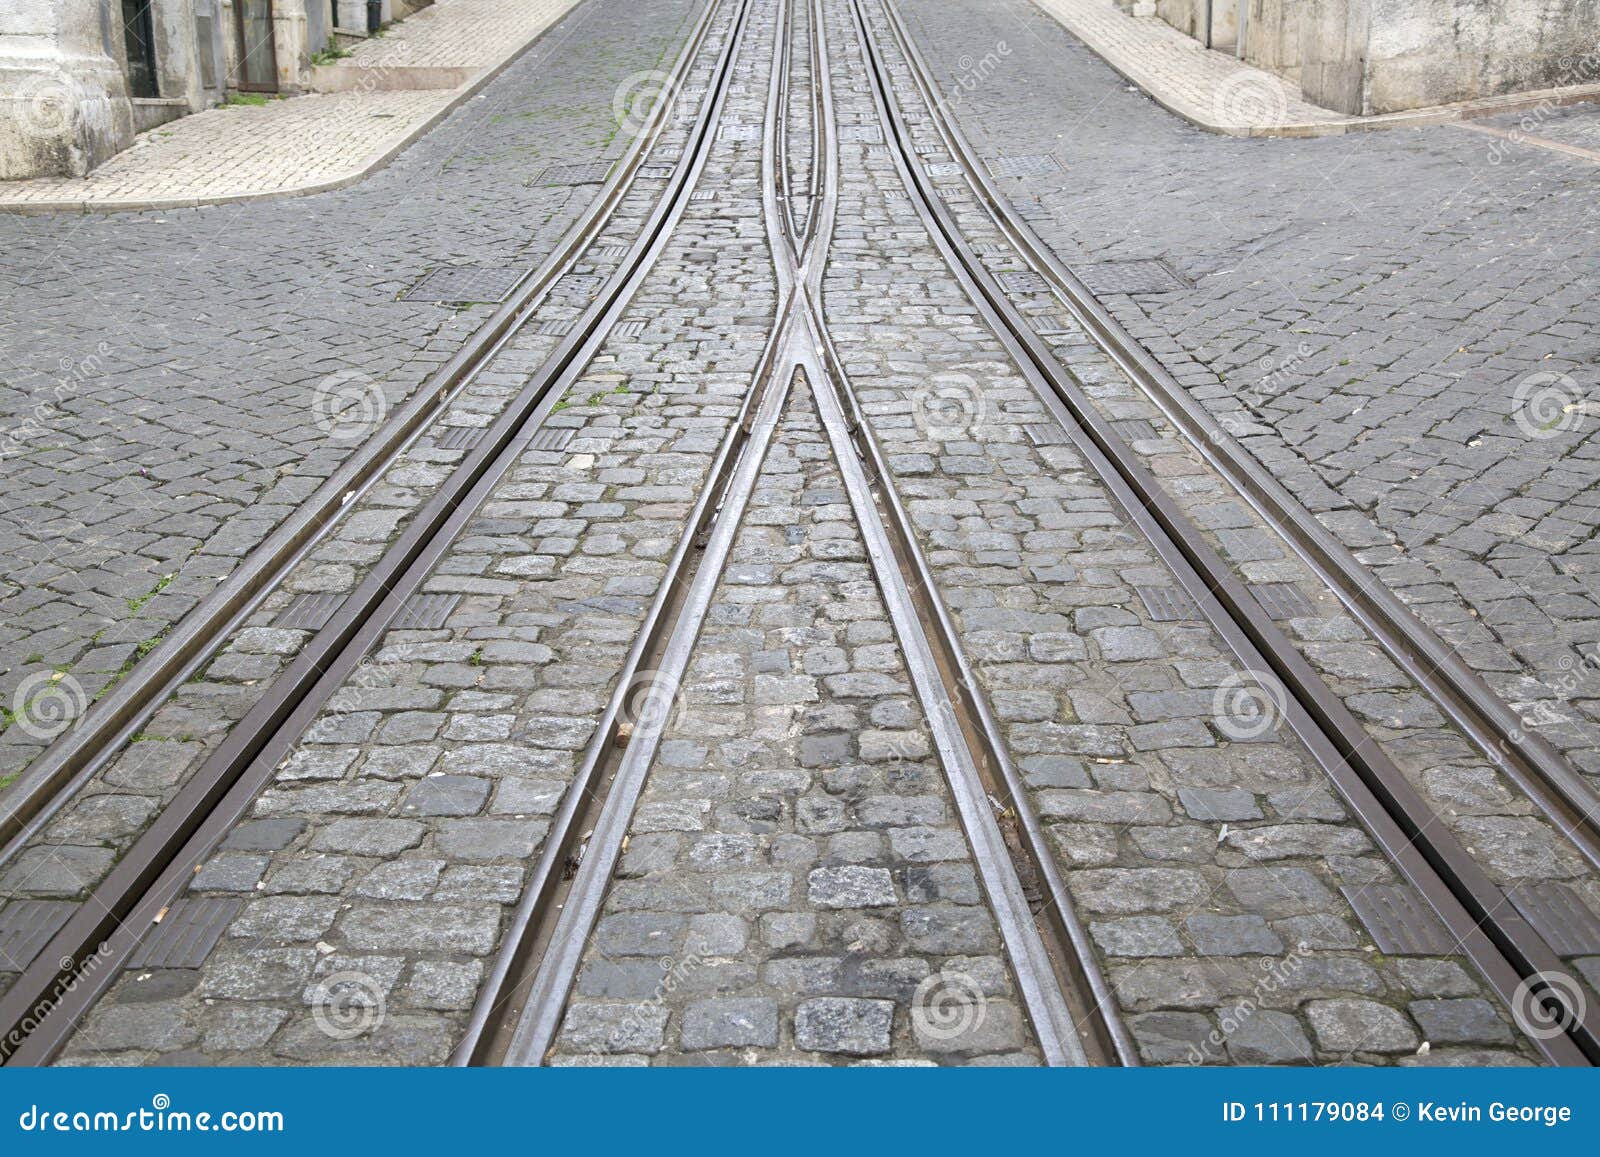 funicular tram tracks, rua da bica de duarte belo street; lisbon